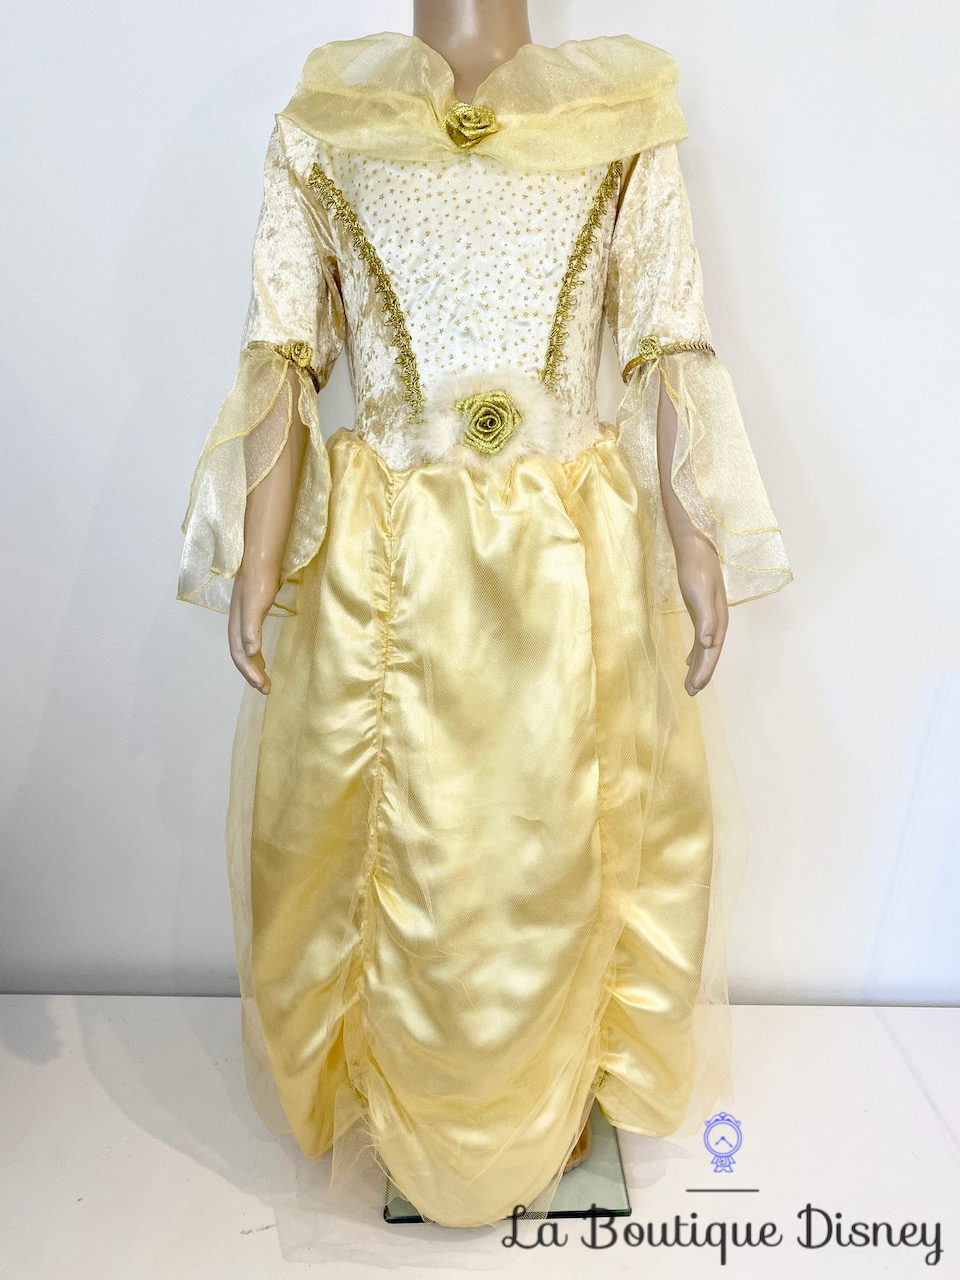 Déguisement Belle La belle et la bête Disneyland Paris Disney taille 6 ans  robe princesse jaune manches longues - Déguisements/Taille 4 à 6 ans - La  Boutique Disney